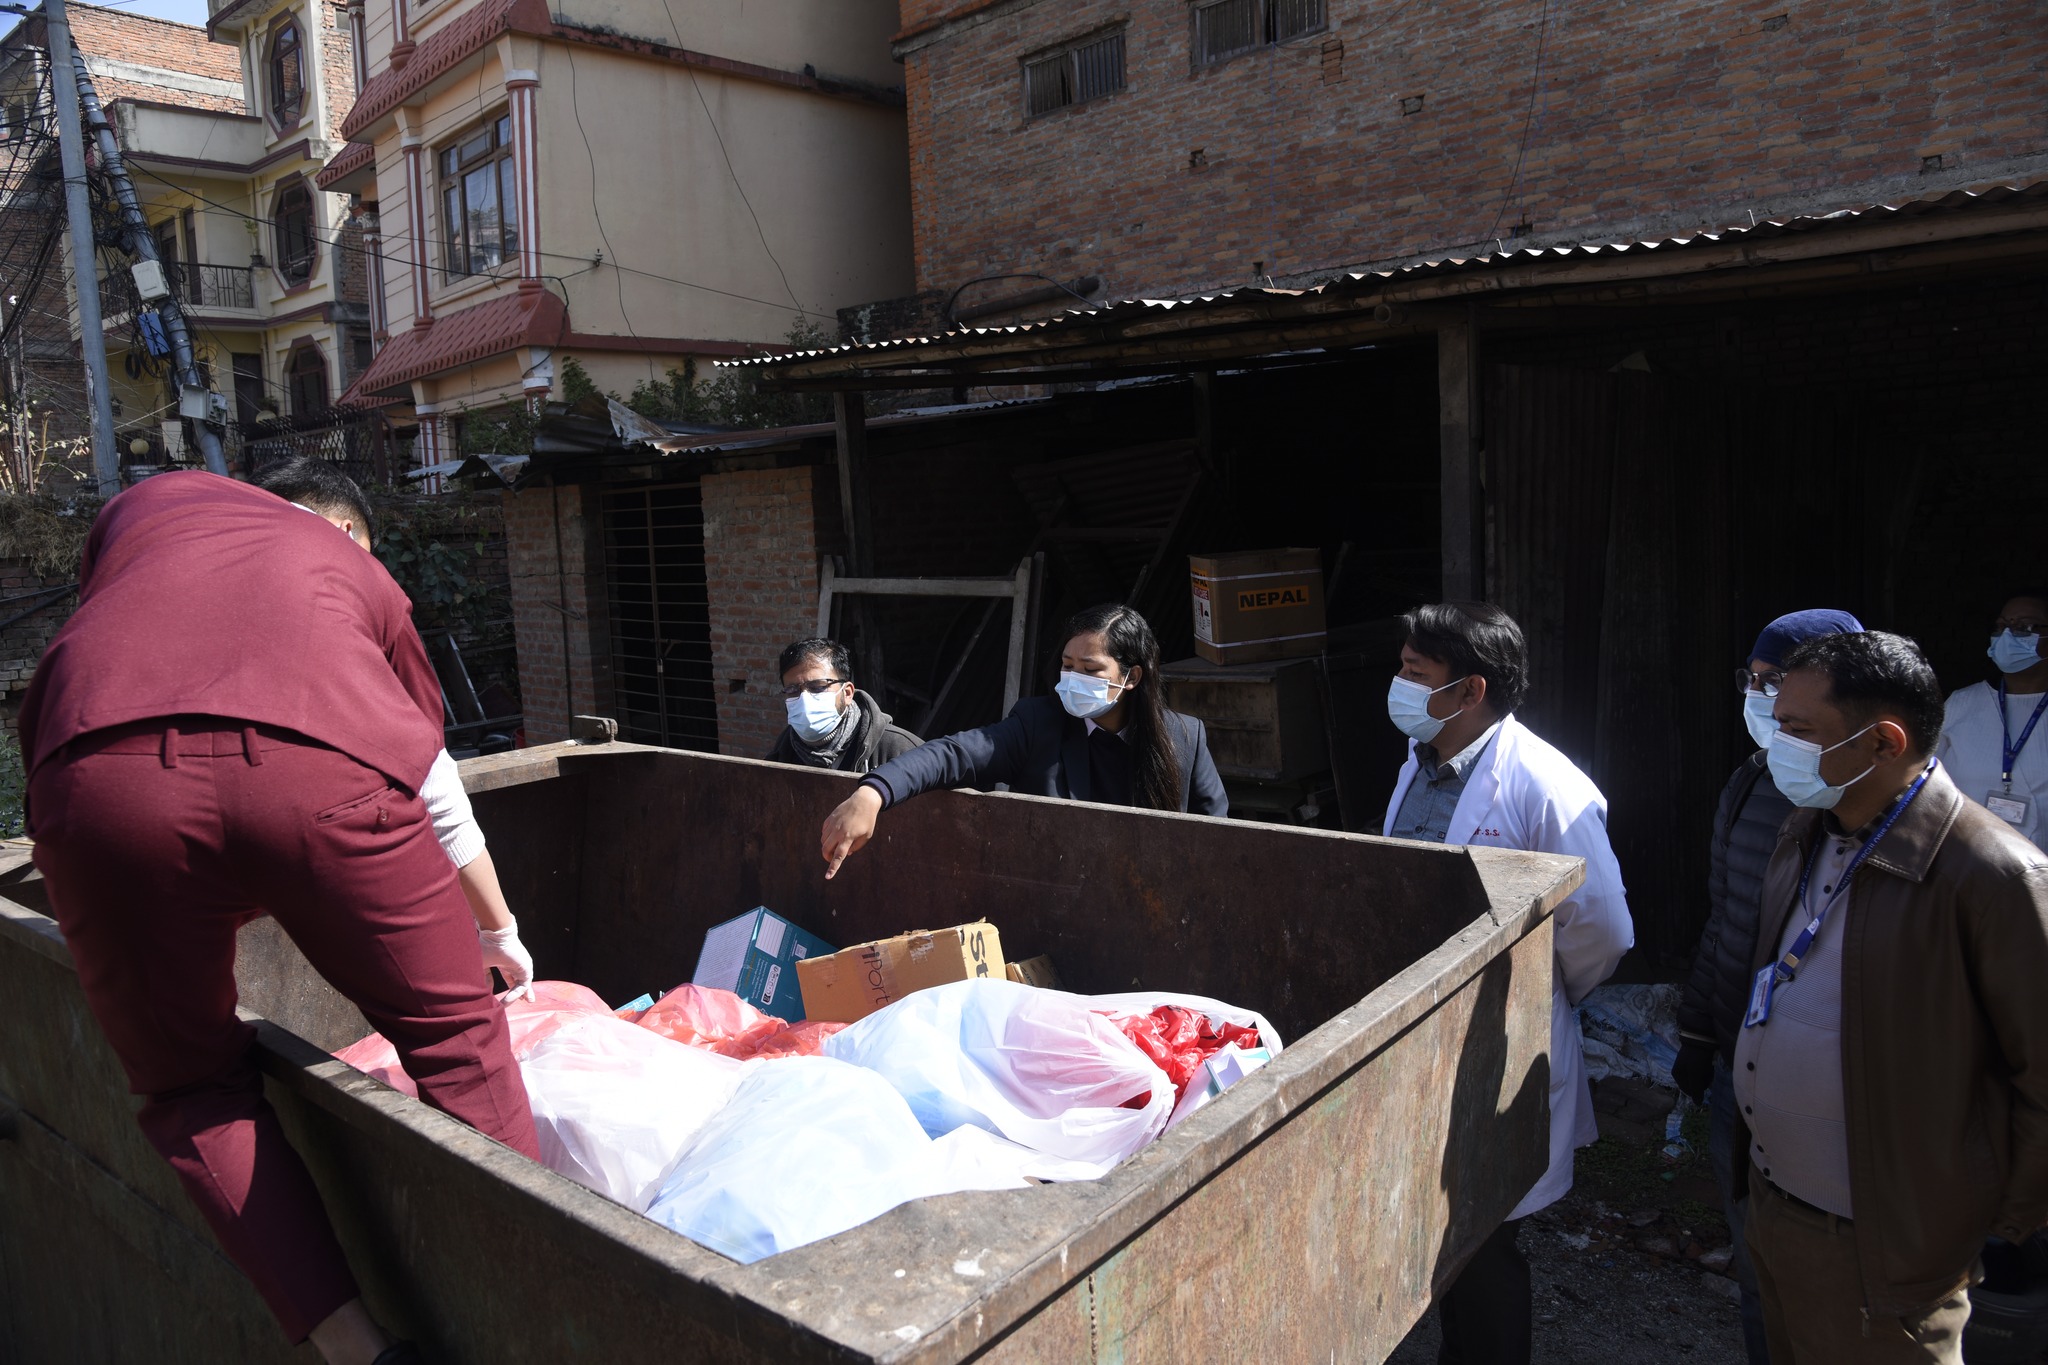 काठमाडौ महानगरले फोहोर संकलनमा रोक लगाएको अस्पतालहरुको संख्या १० पुग्यो